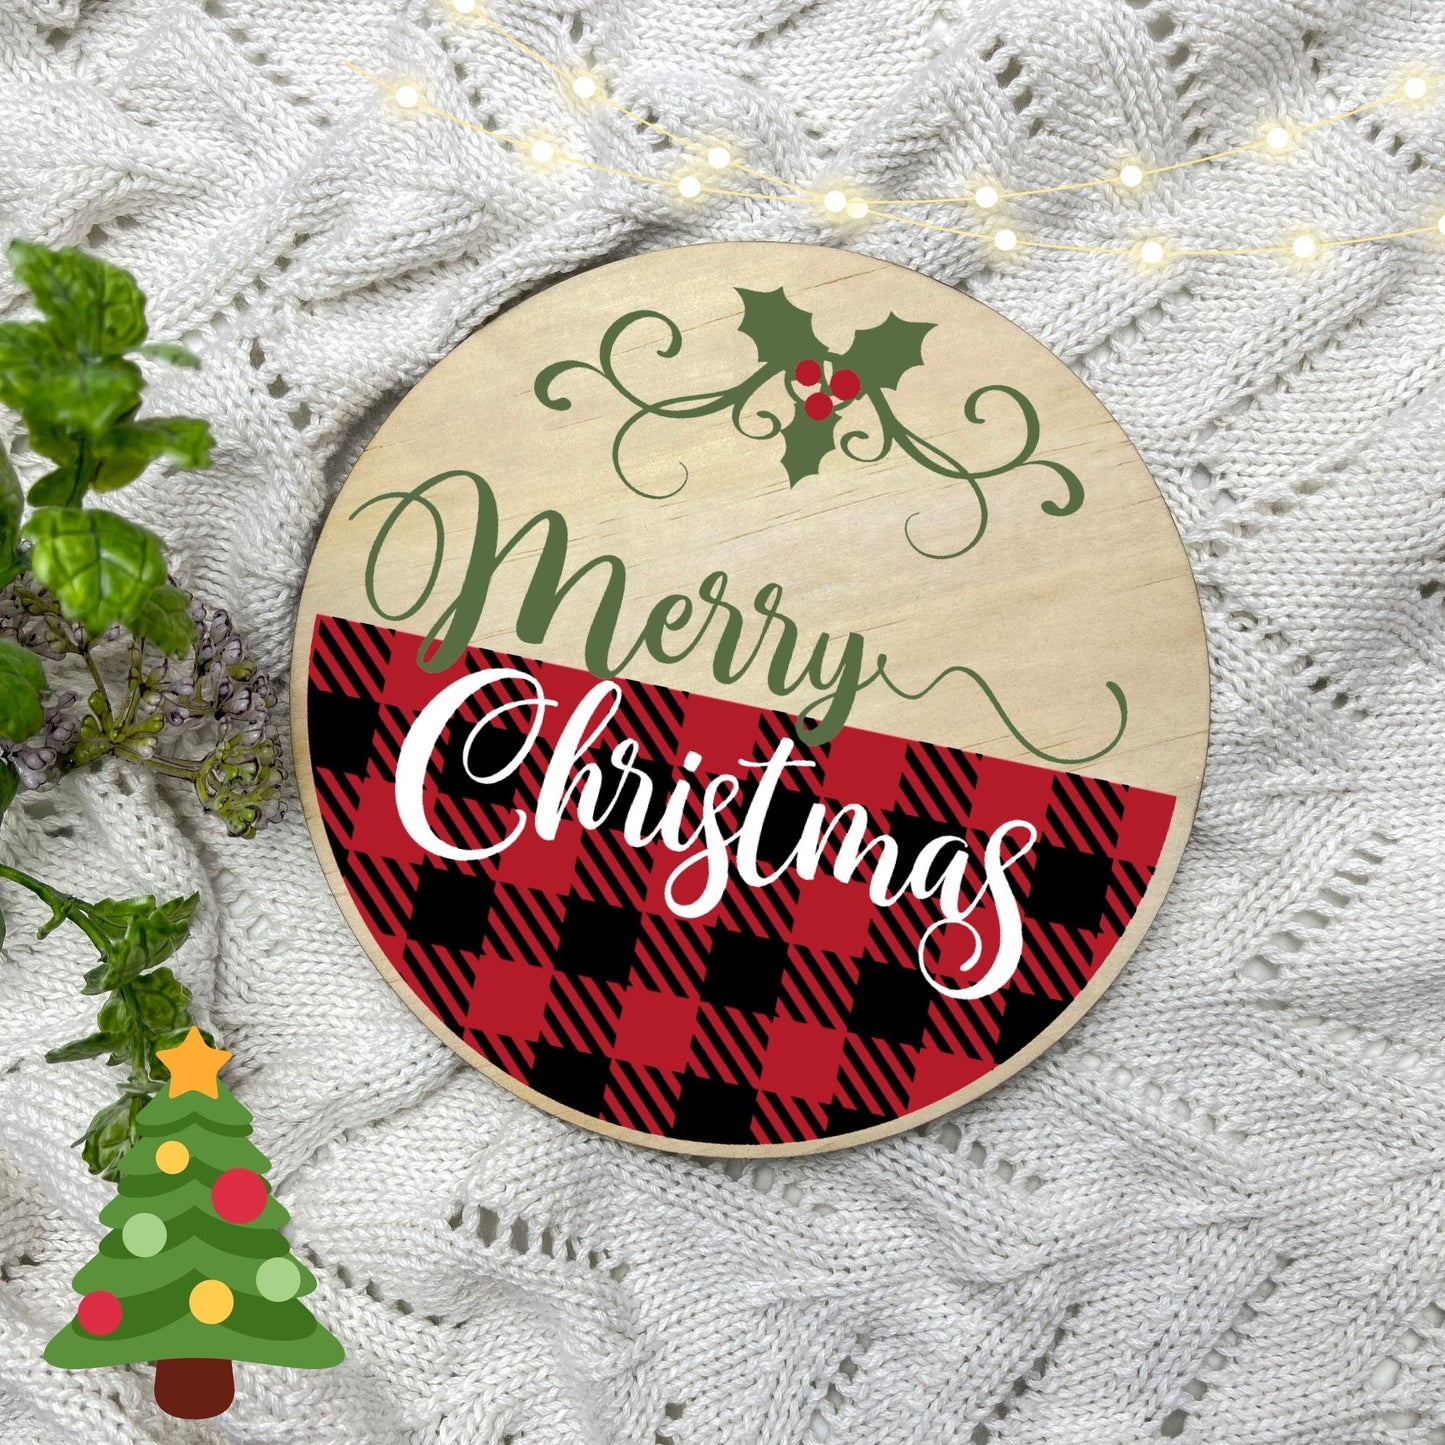 Merry Christmas Sign, Seasonal Decor, Holidays decor, Christmas Decor, festive decorations c25